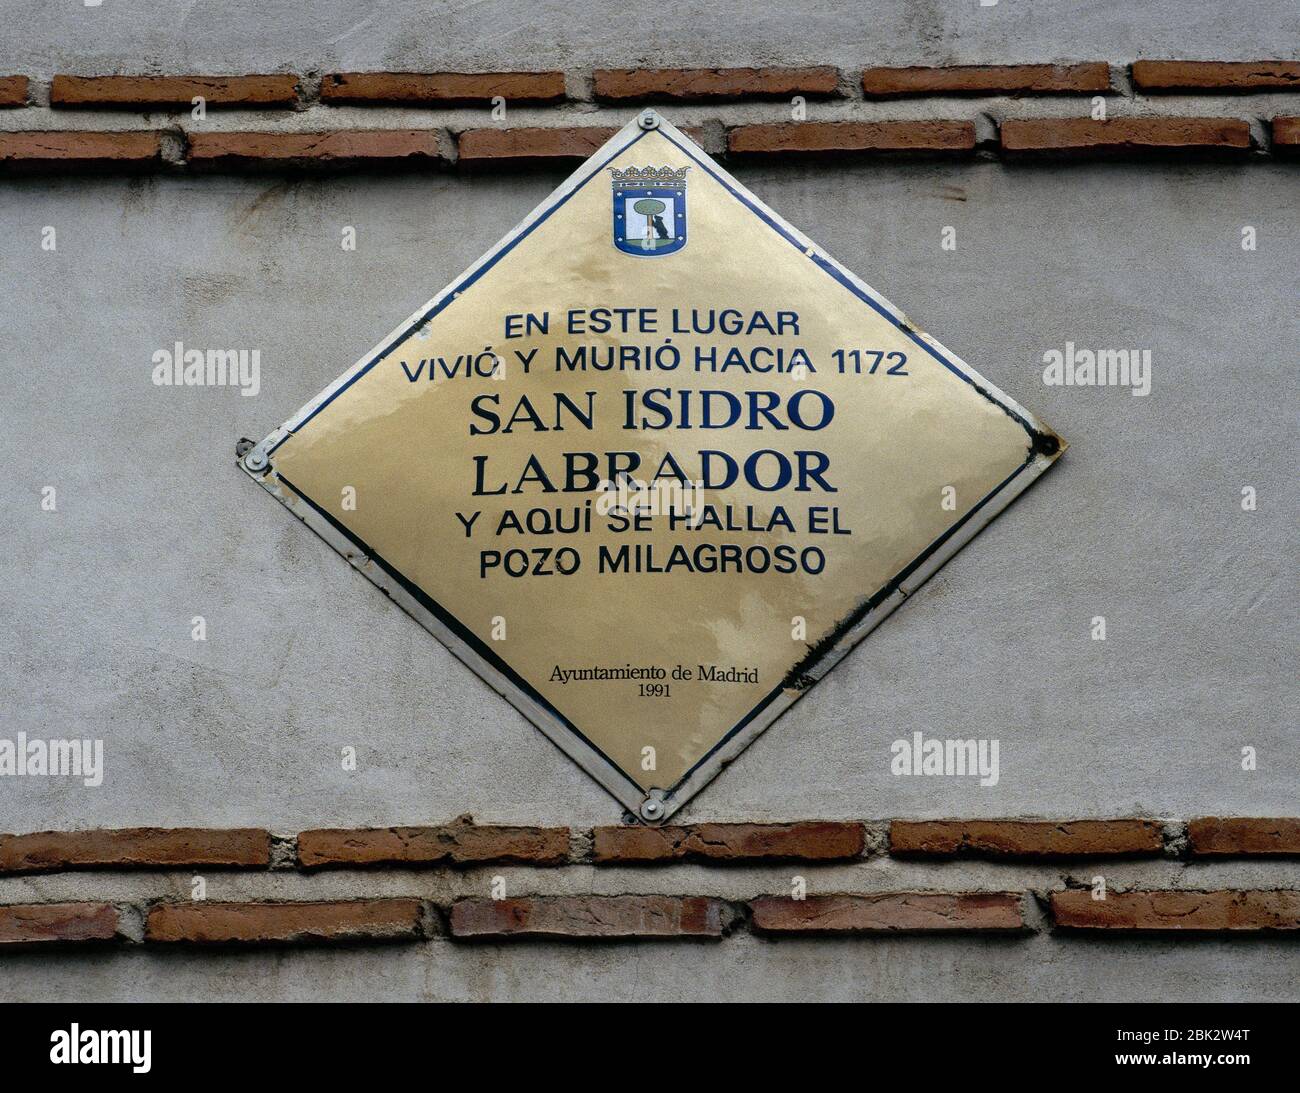 San Isidoro el obrero (c. 1070-1130). Placa conmemorativa situada junto al Ayuntamiento de Madrid en 1991, en la fachada de la casa donde vivió y murió el santo alrededor de 1172. Madrid, España. Foto de stock